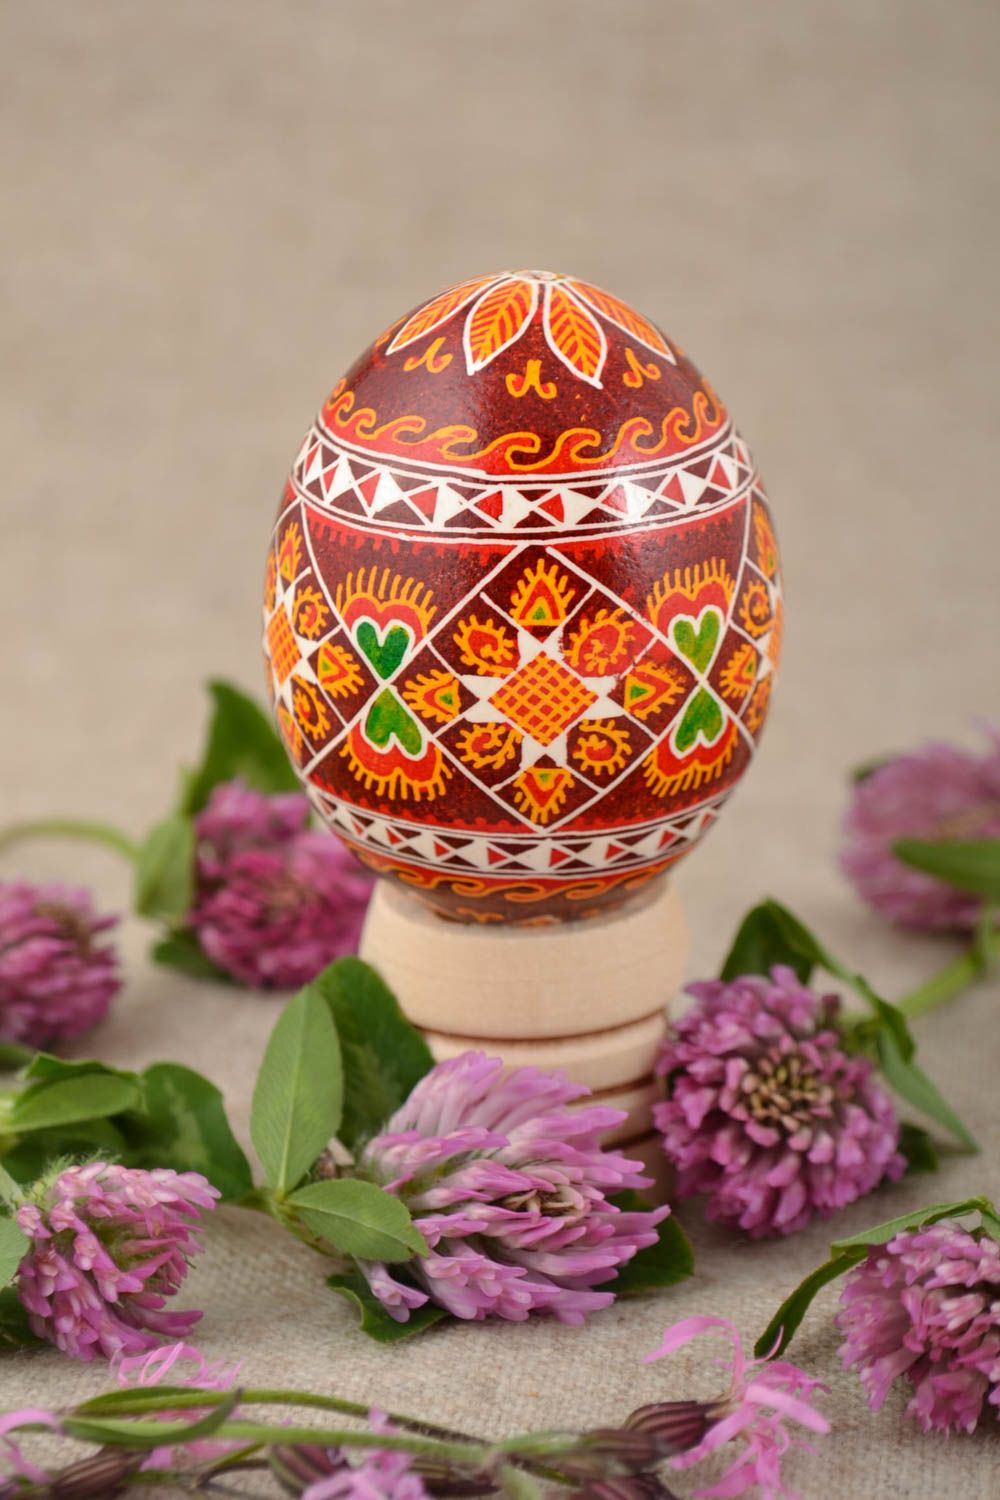 Декоративное яйцо на Пасху в красных тонах с орнаментом красивое ручной работы фото 1